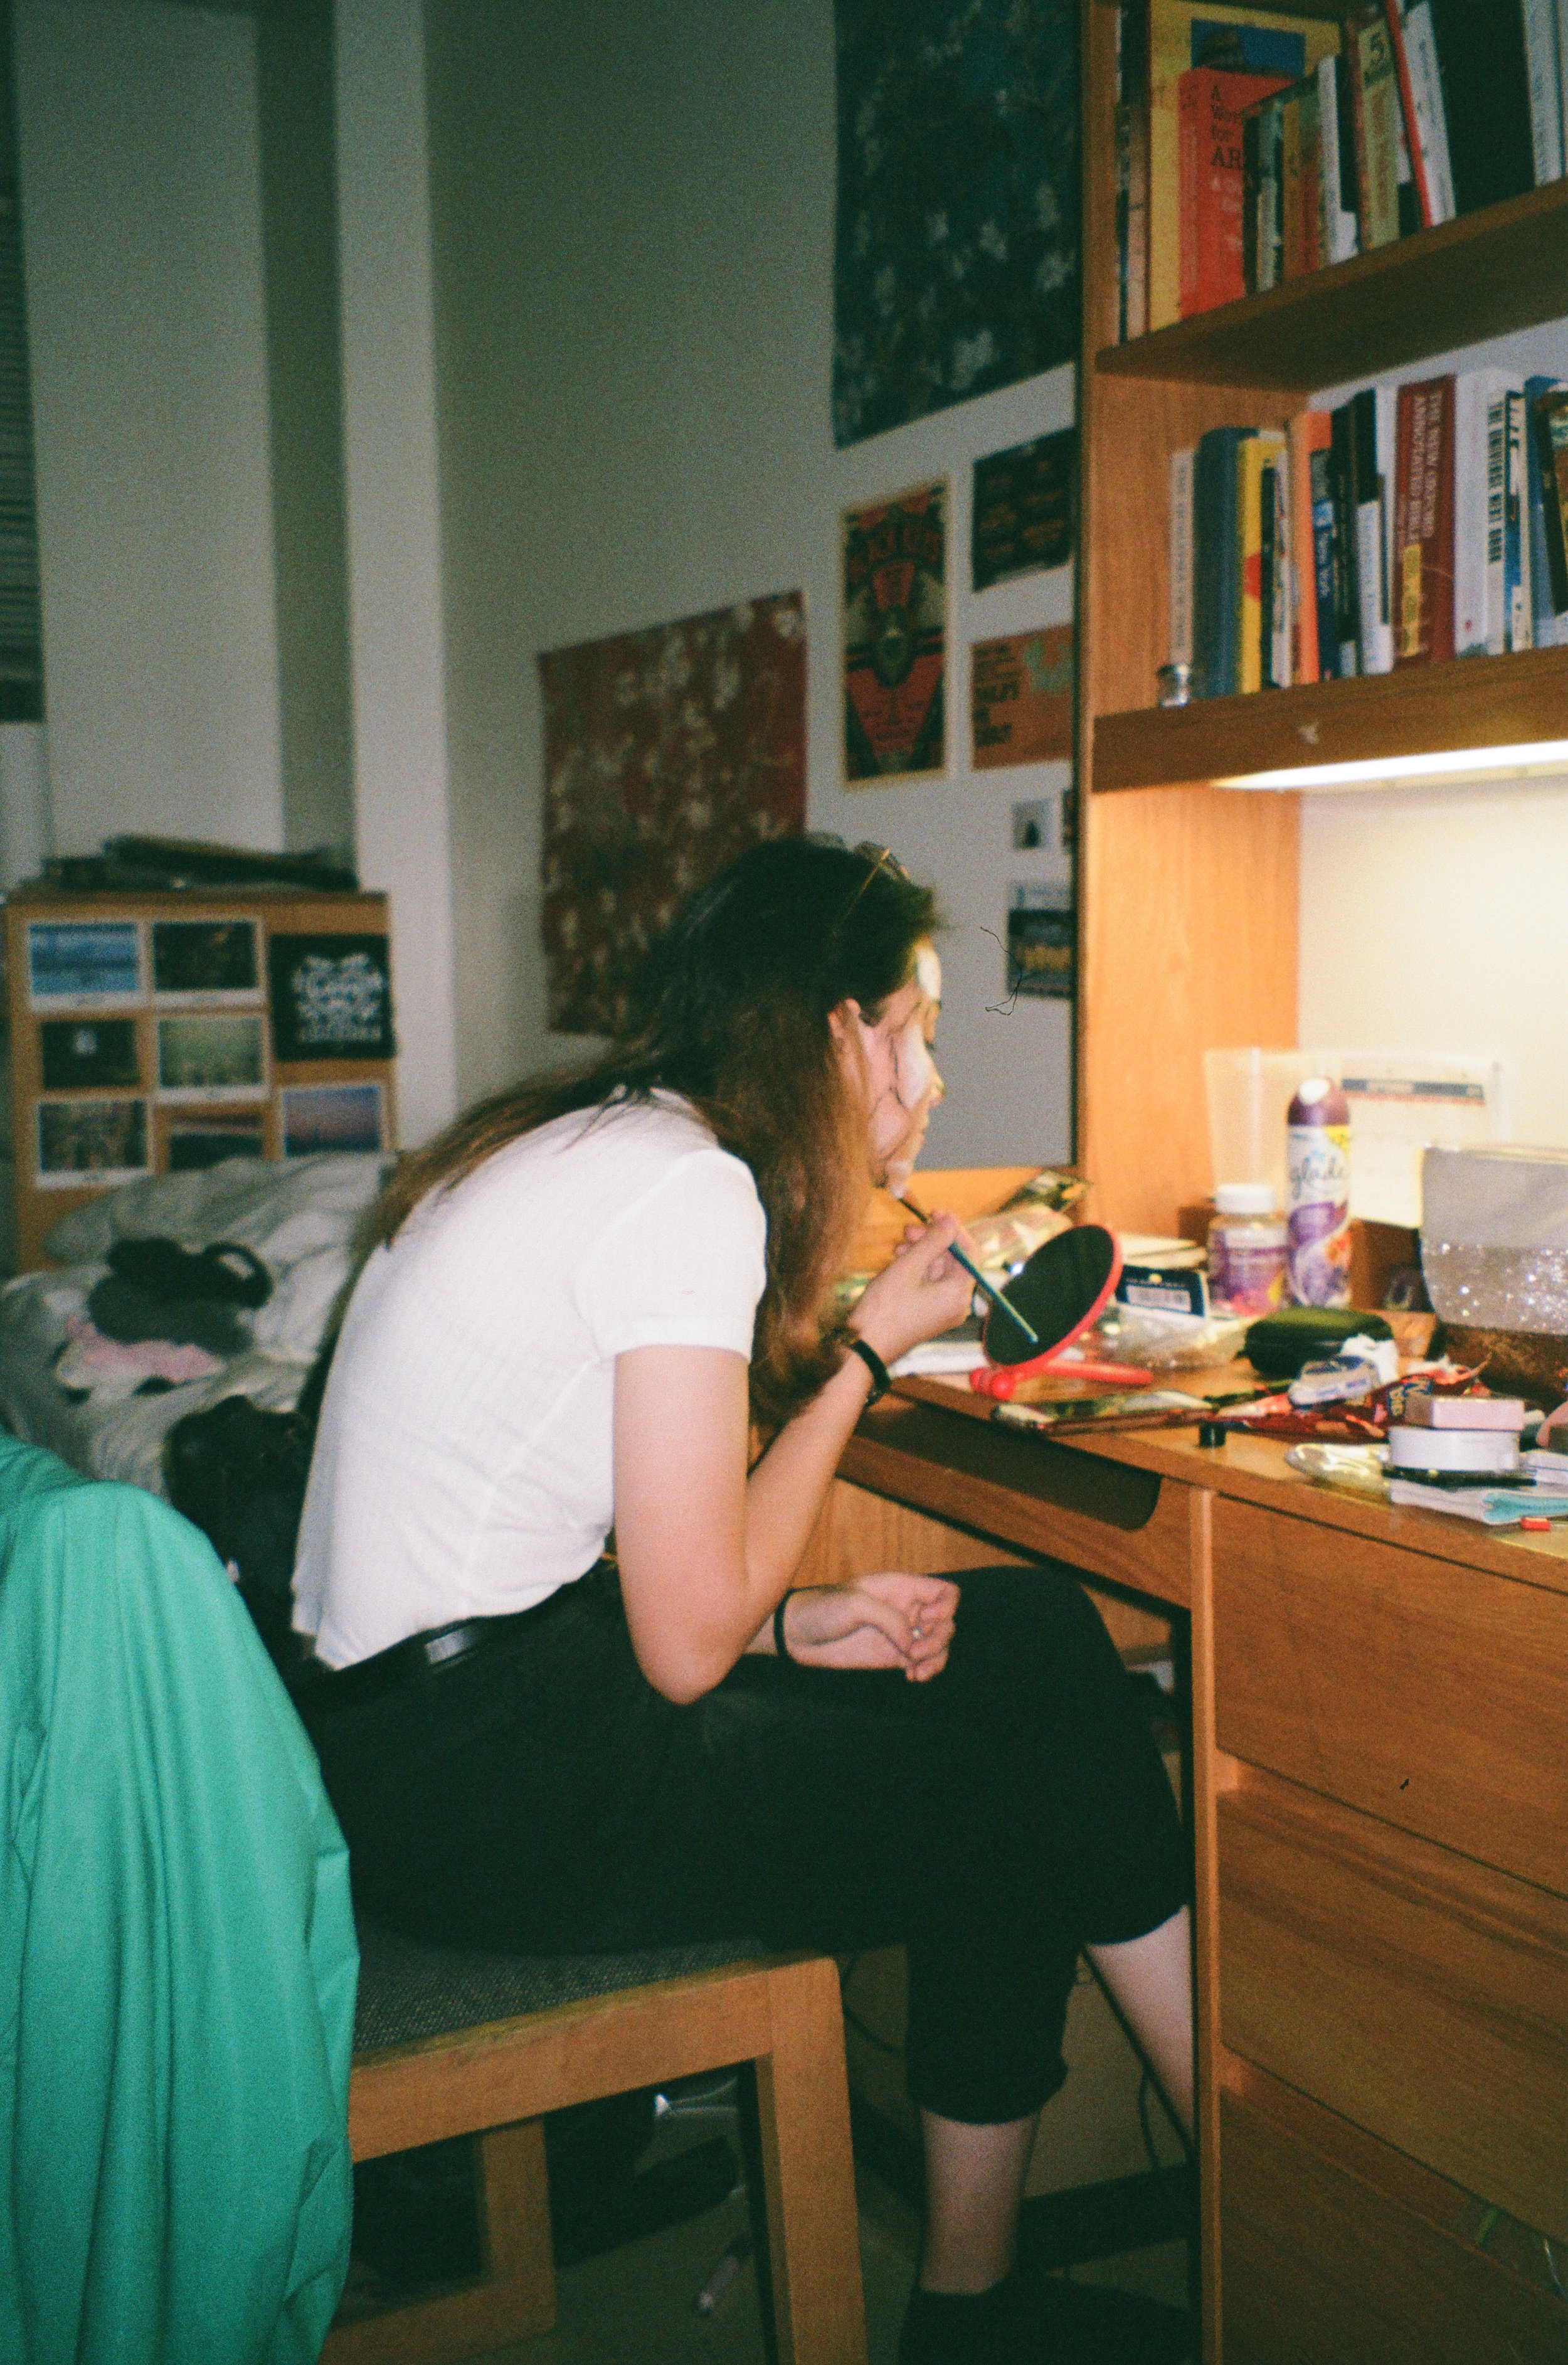 zoe in kate's nyc dorm room, 2019